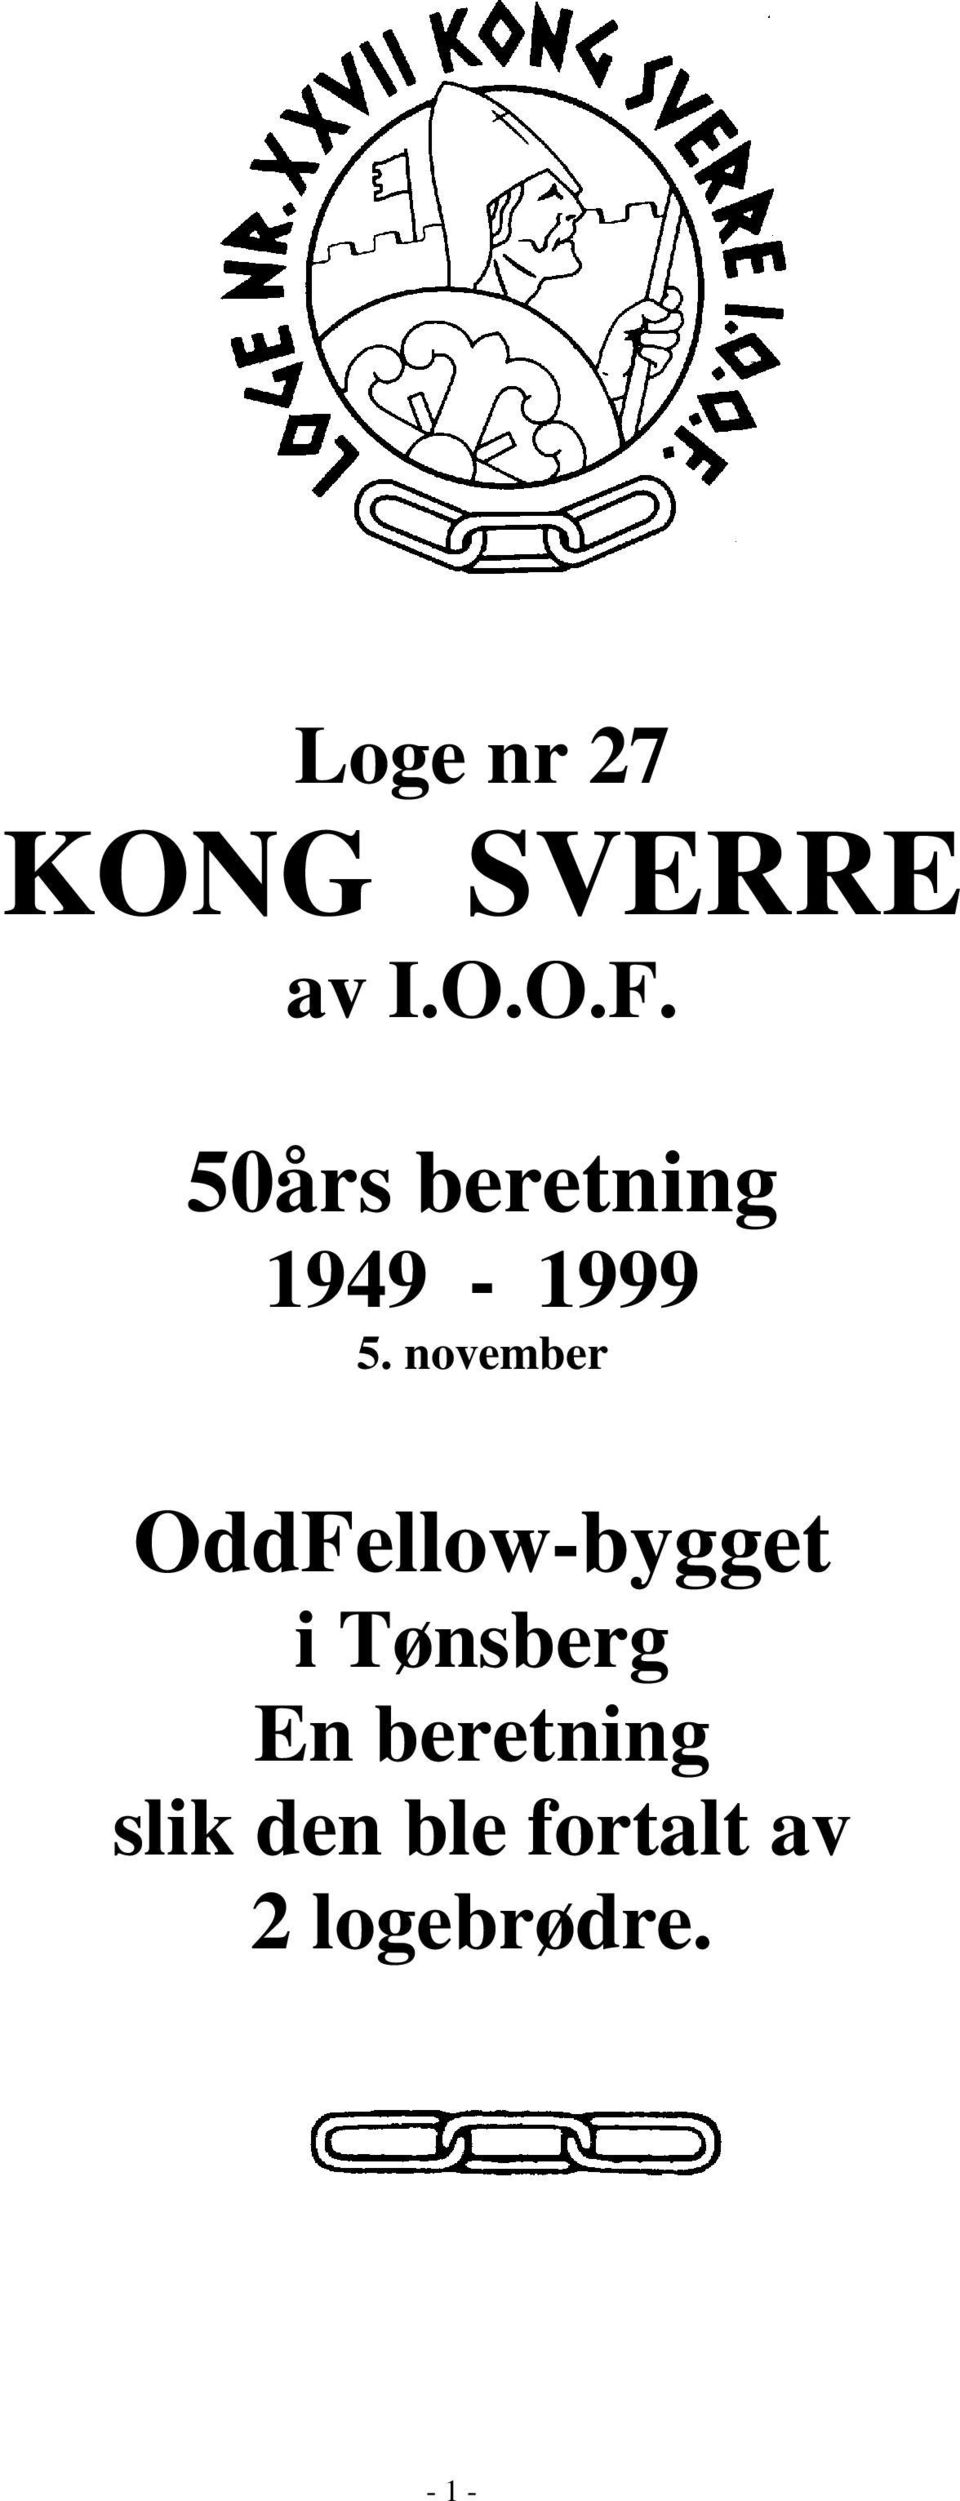 november OddFellow-bygget i Tønsberg En